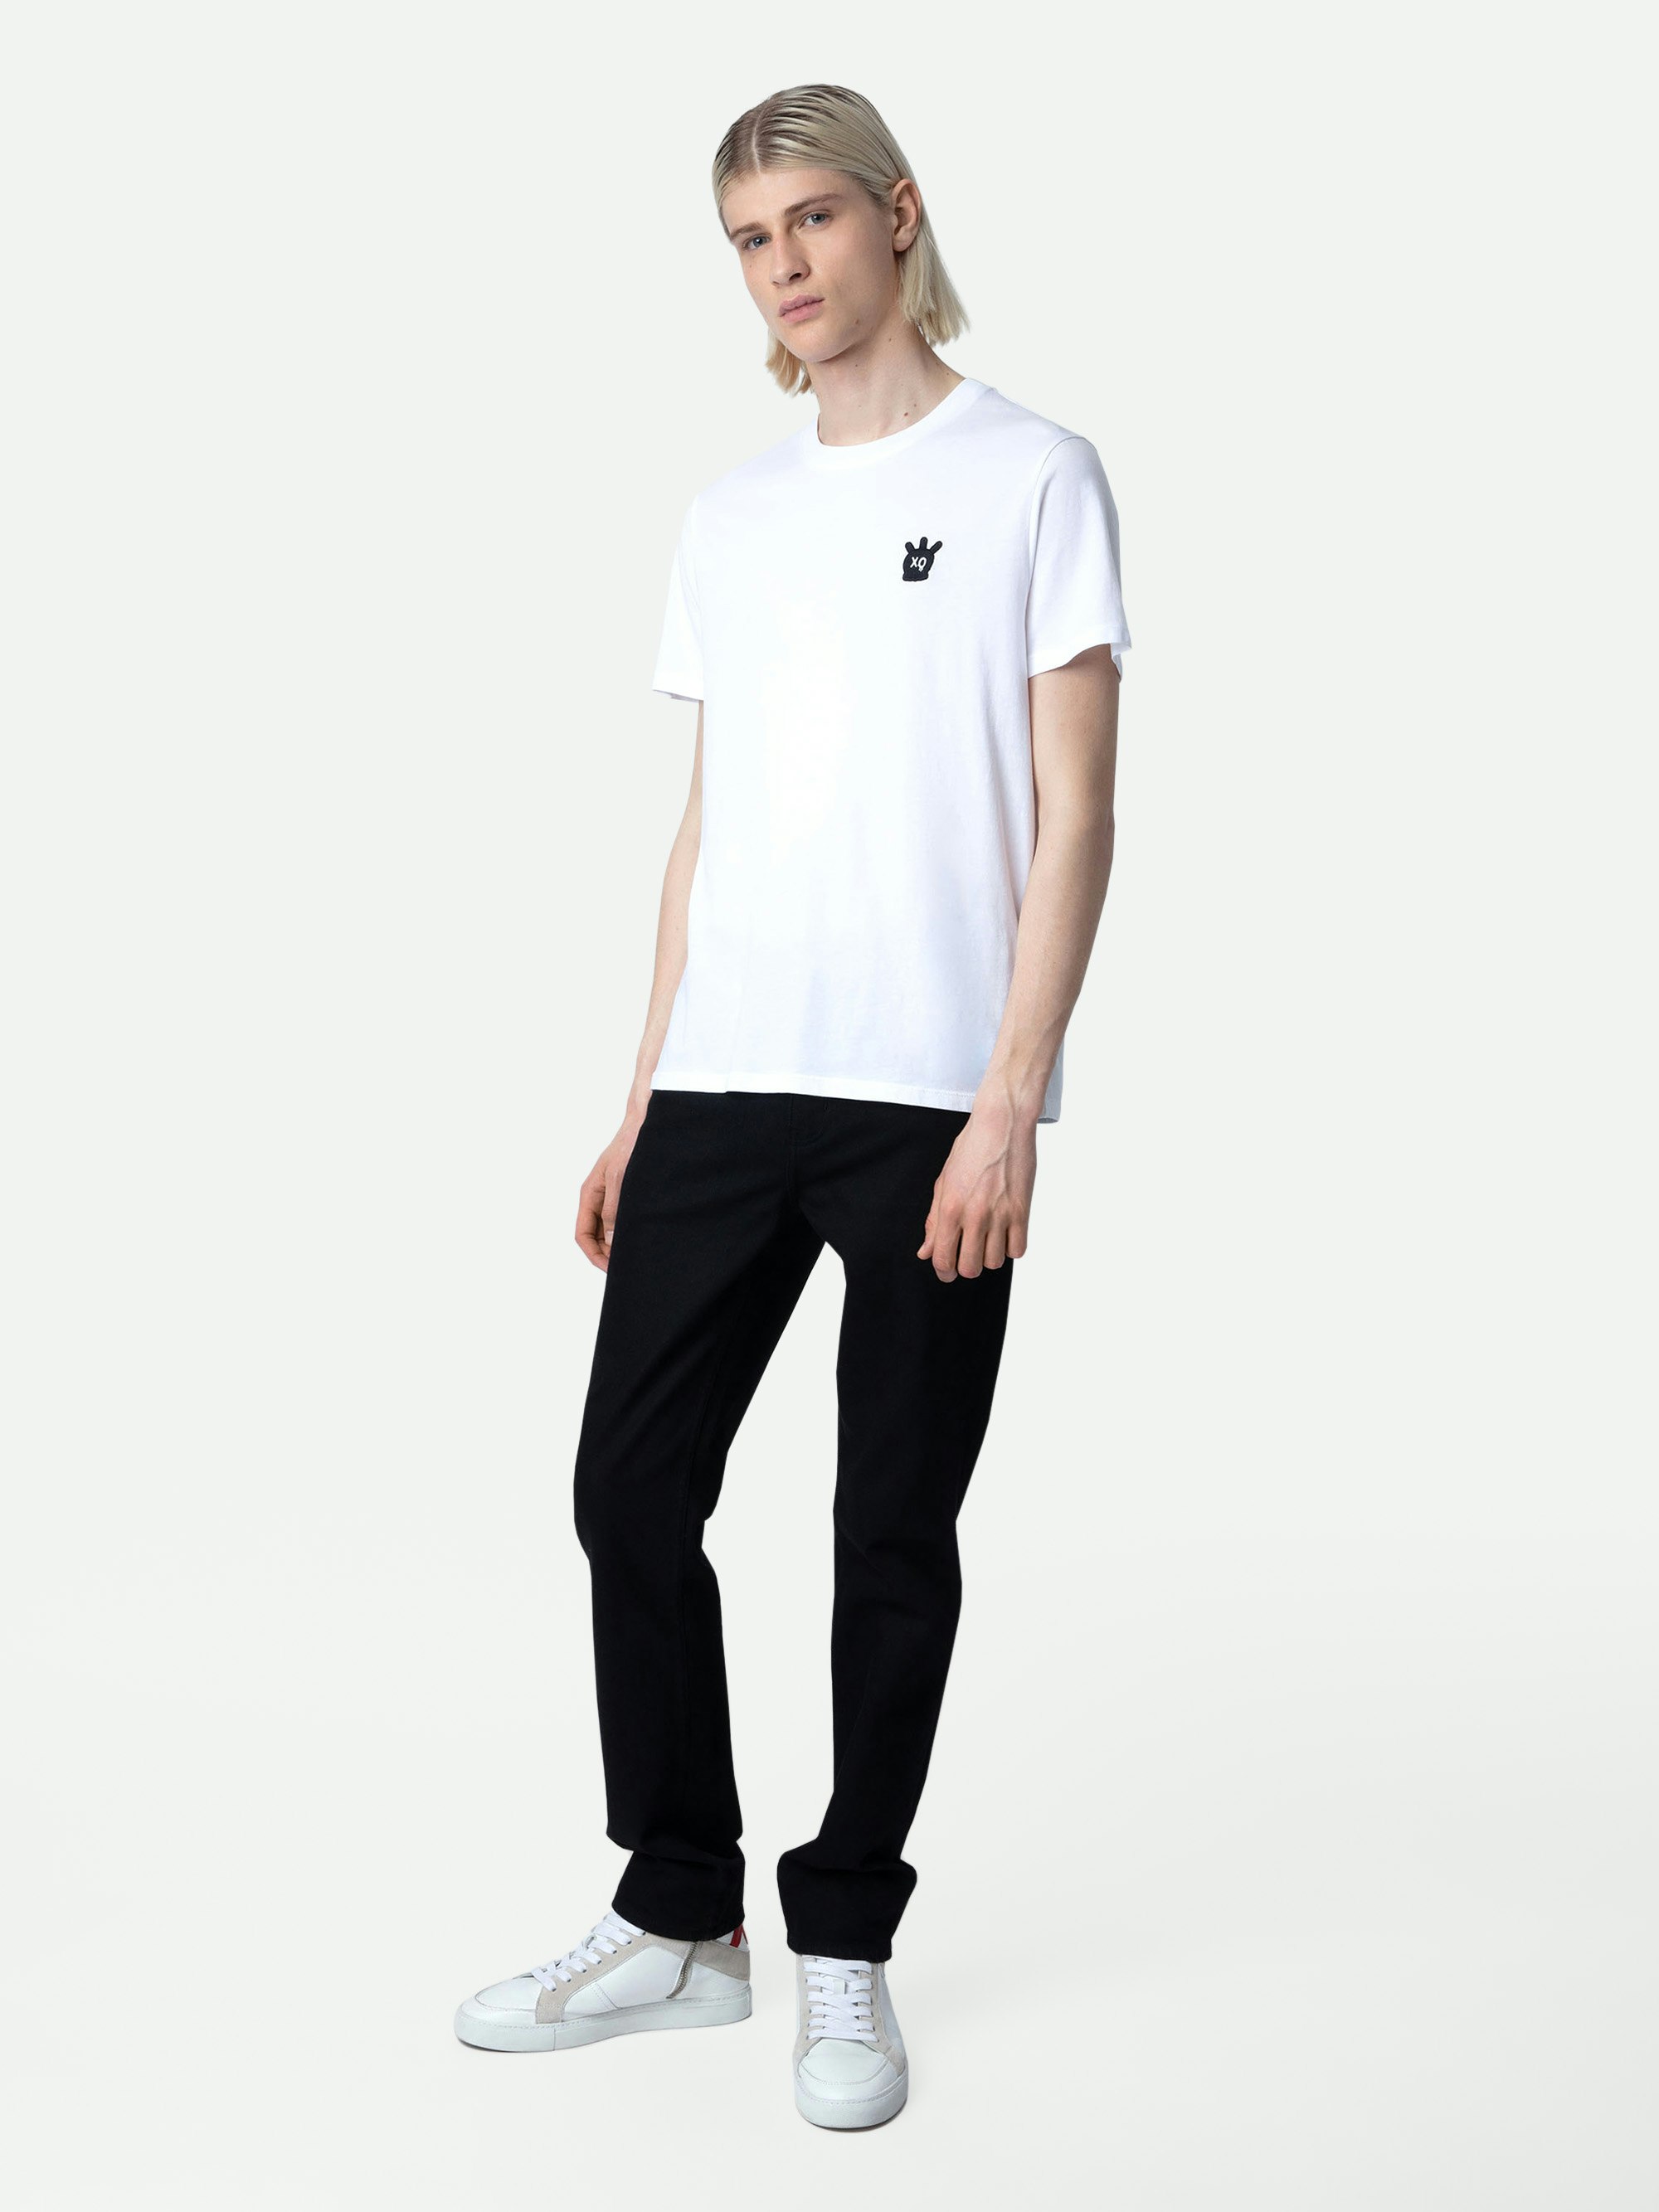 Camiseta Tommy Skull XO - Camiseta blanca de algodón para hombre con parche de calavera XO en el pecho.